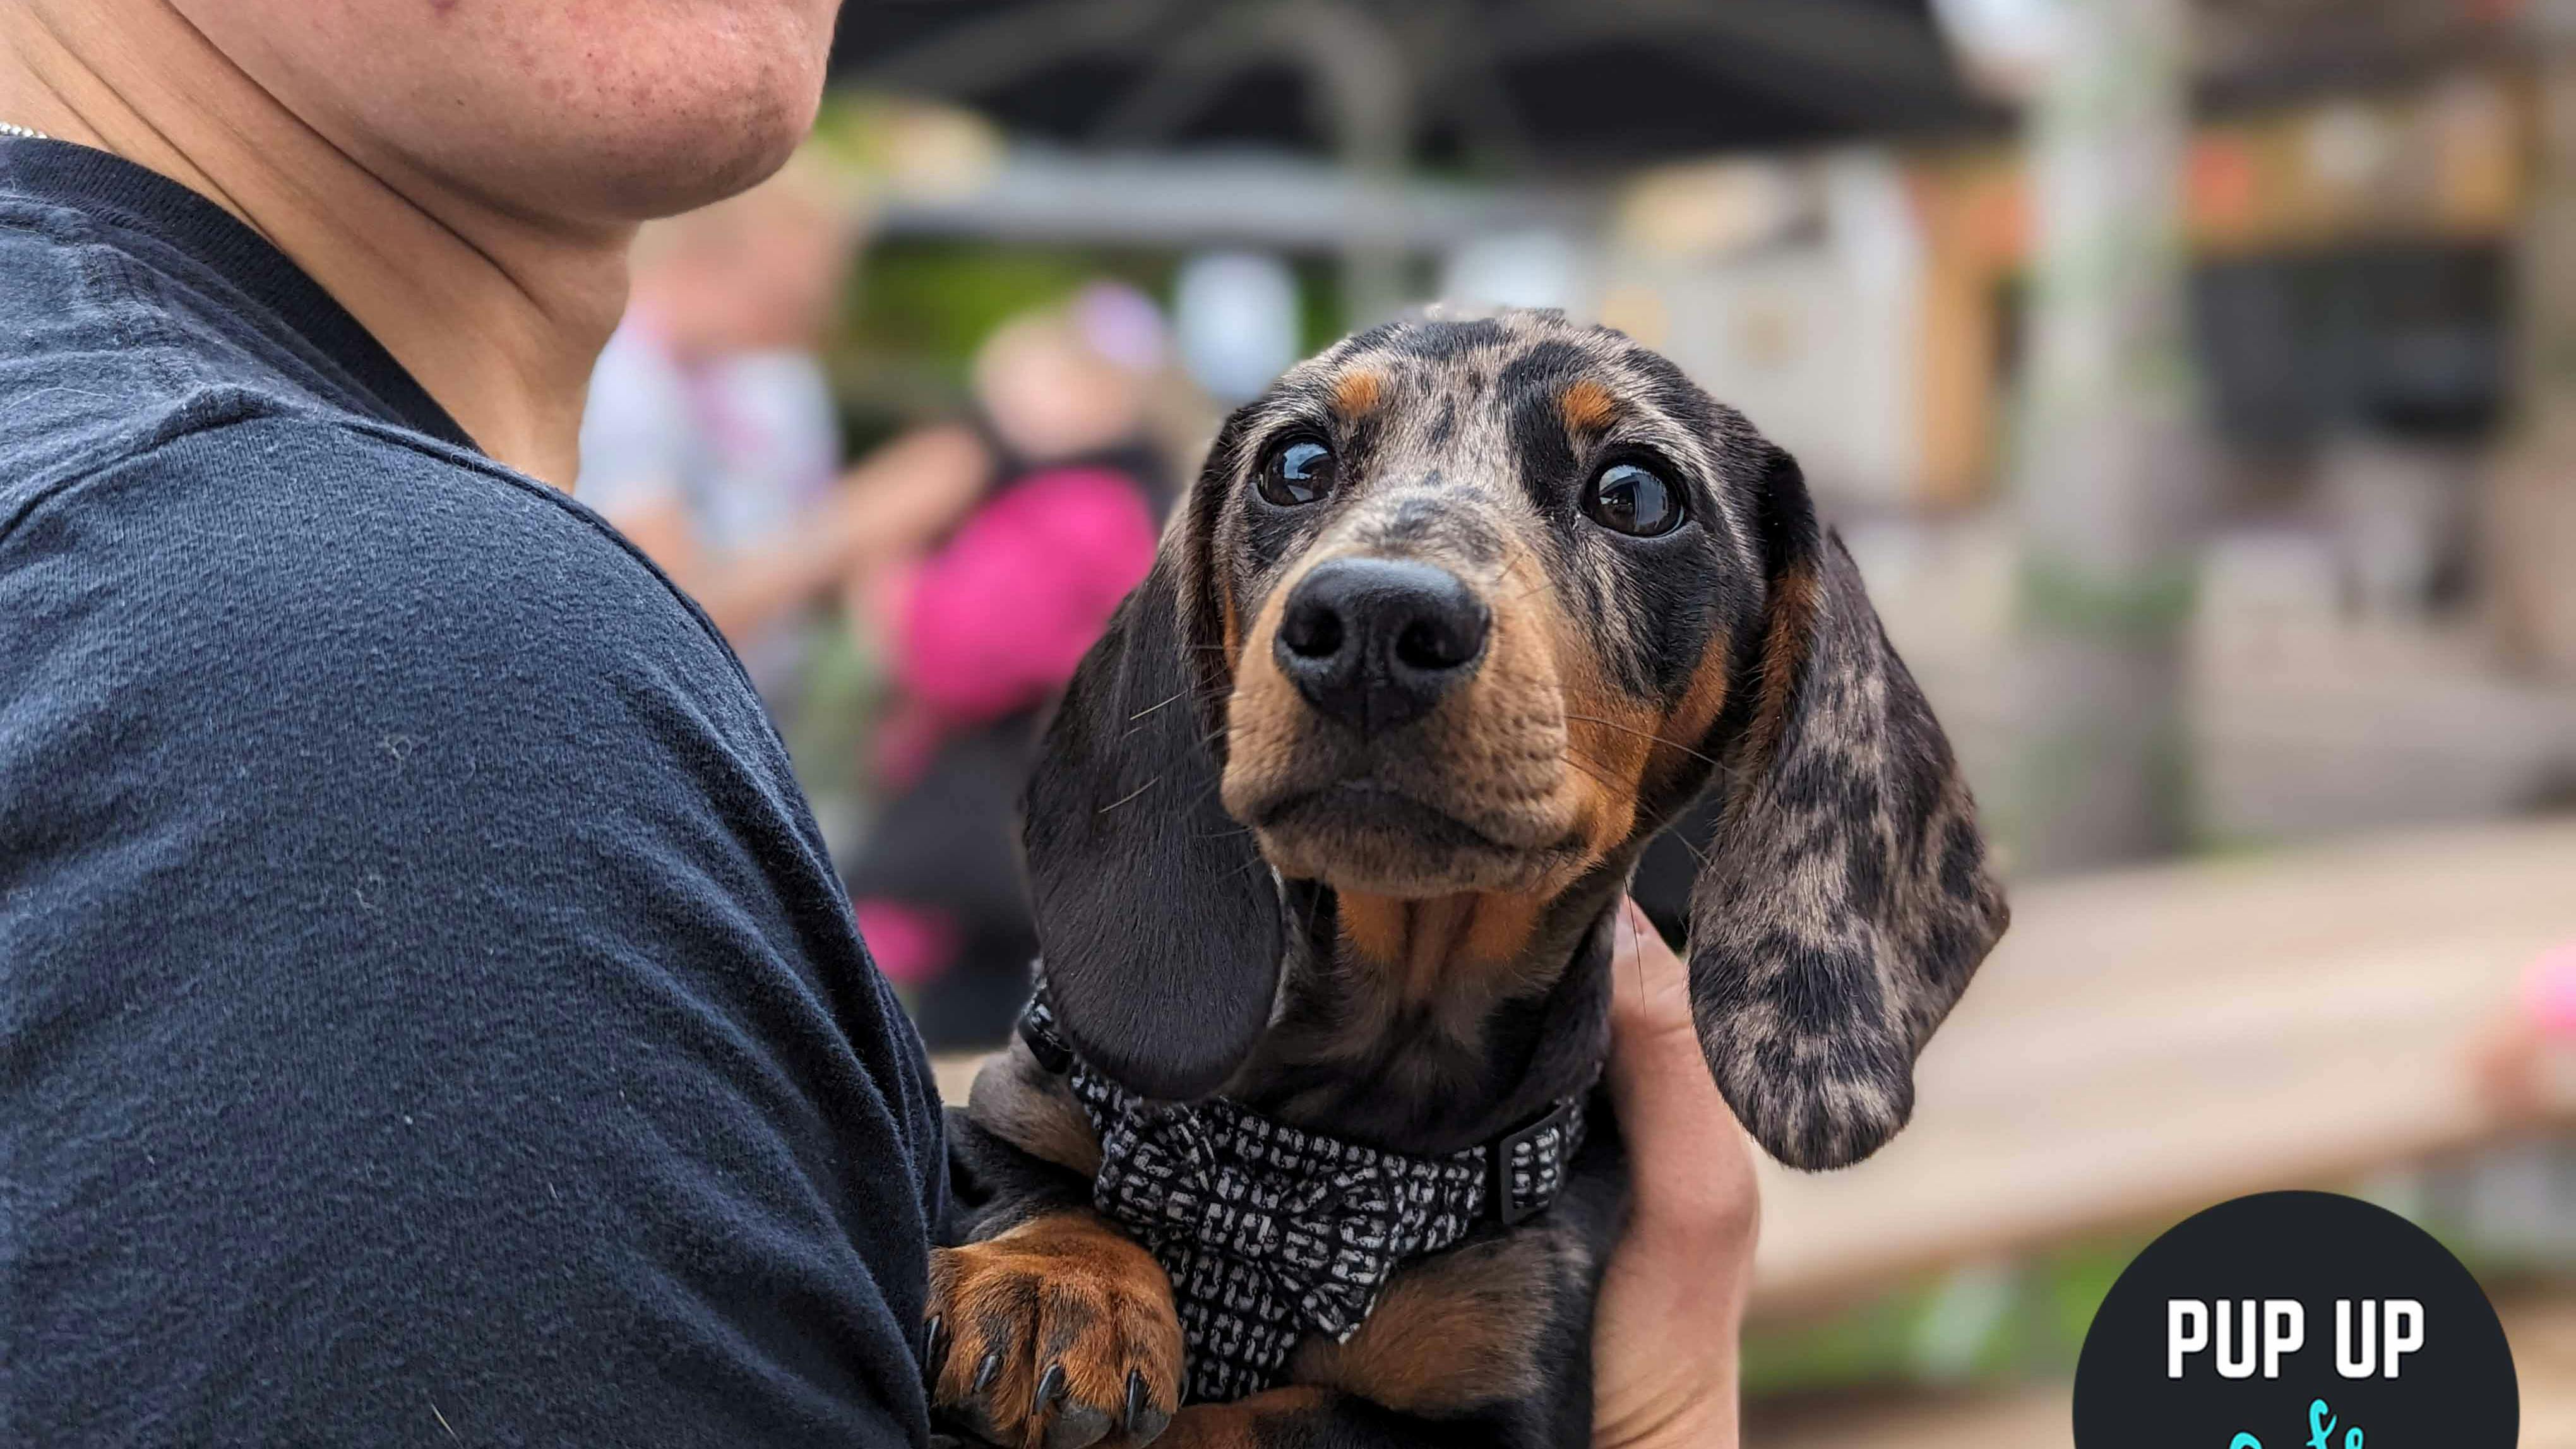 Pup Up Cafe x Revolución de Cuba host fun dog event for all breeds